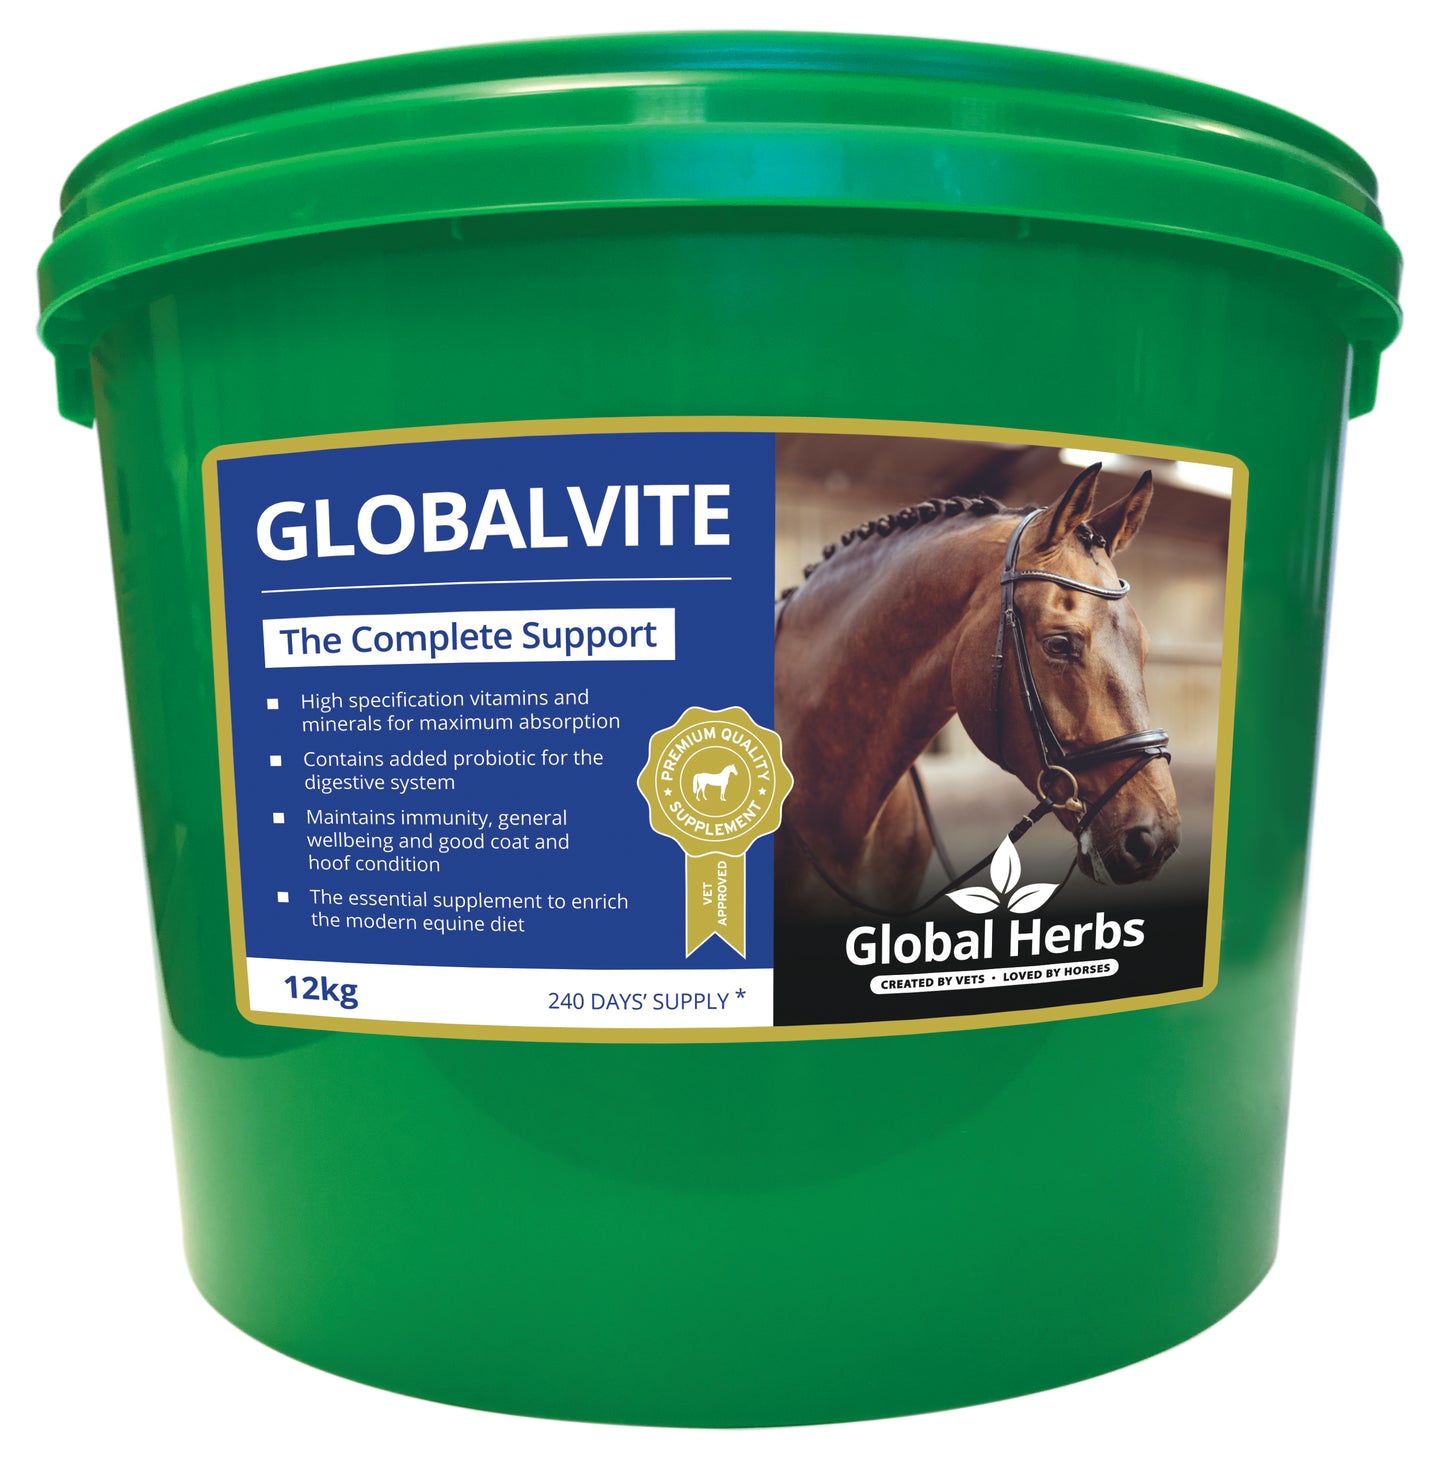 GlobalVite - Global Herbs